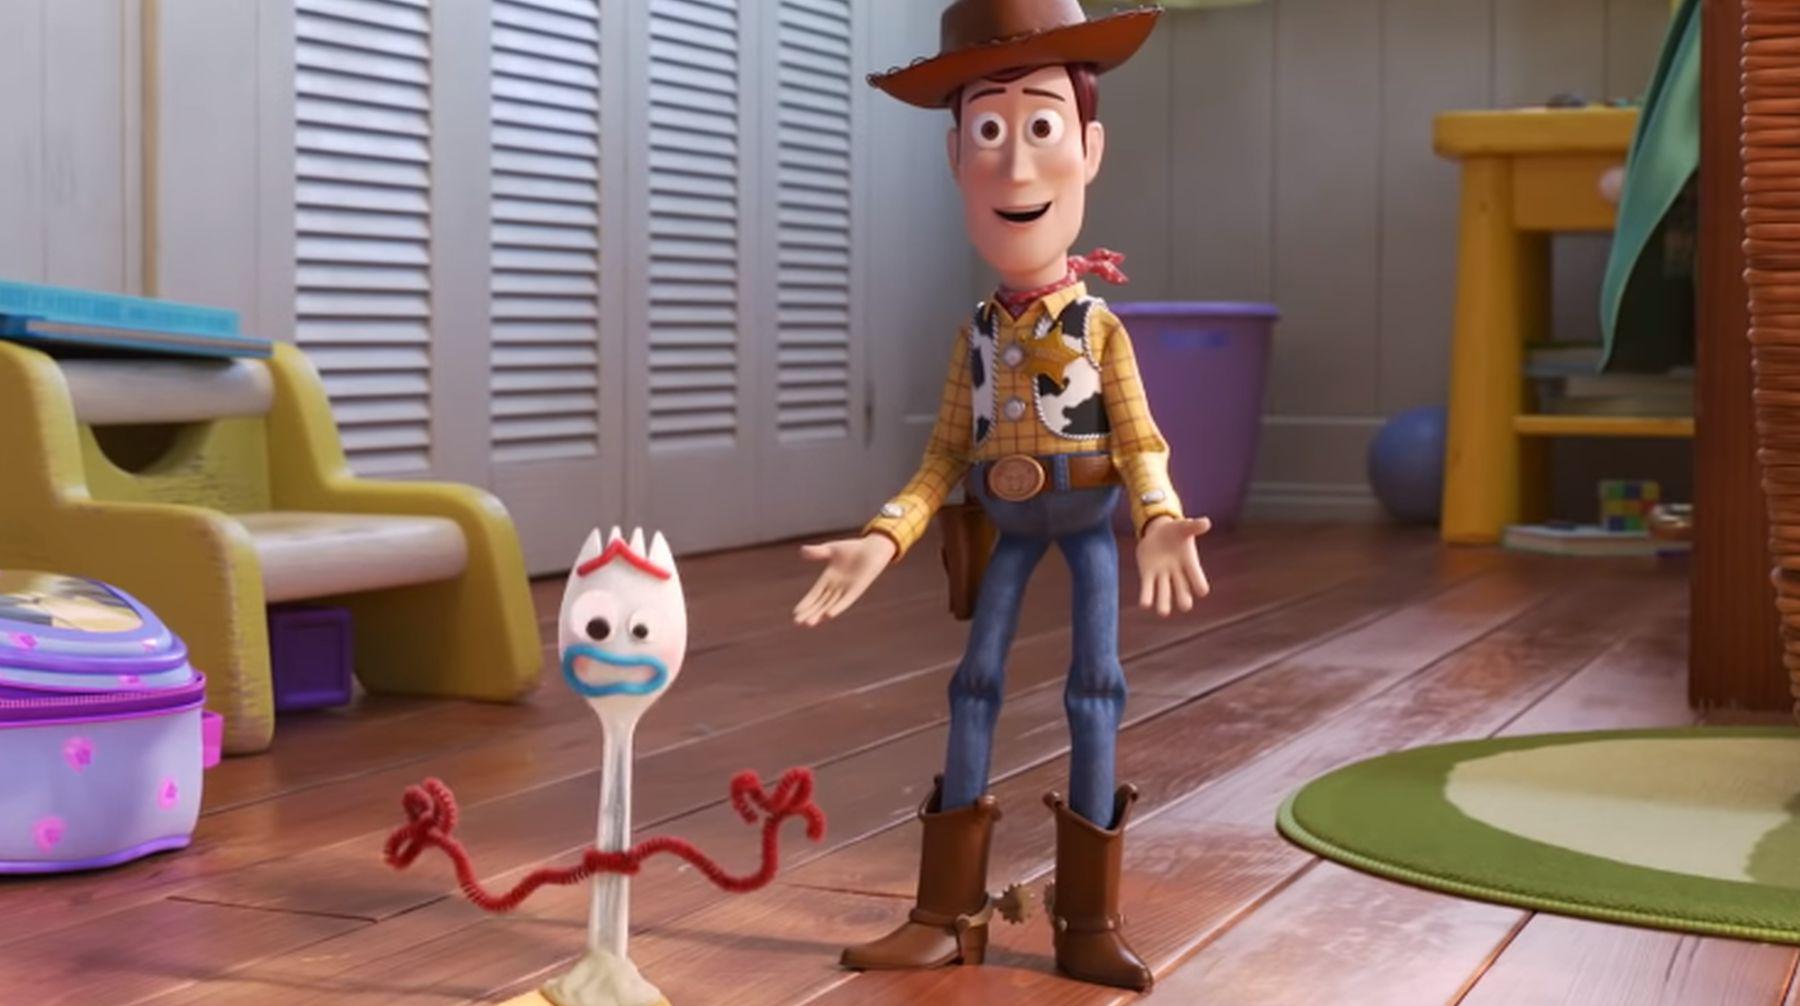 Escenas del tráiler de "Toy Story 4". (Video: HBO)